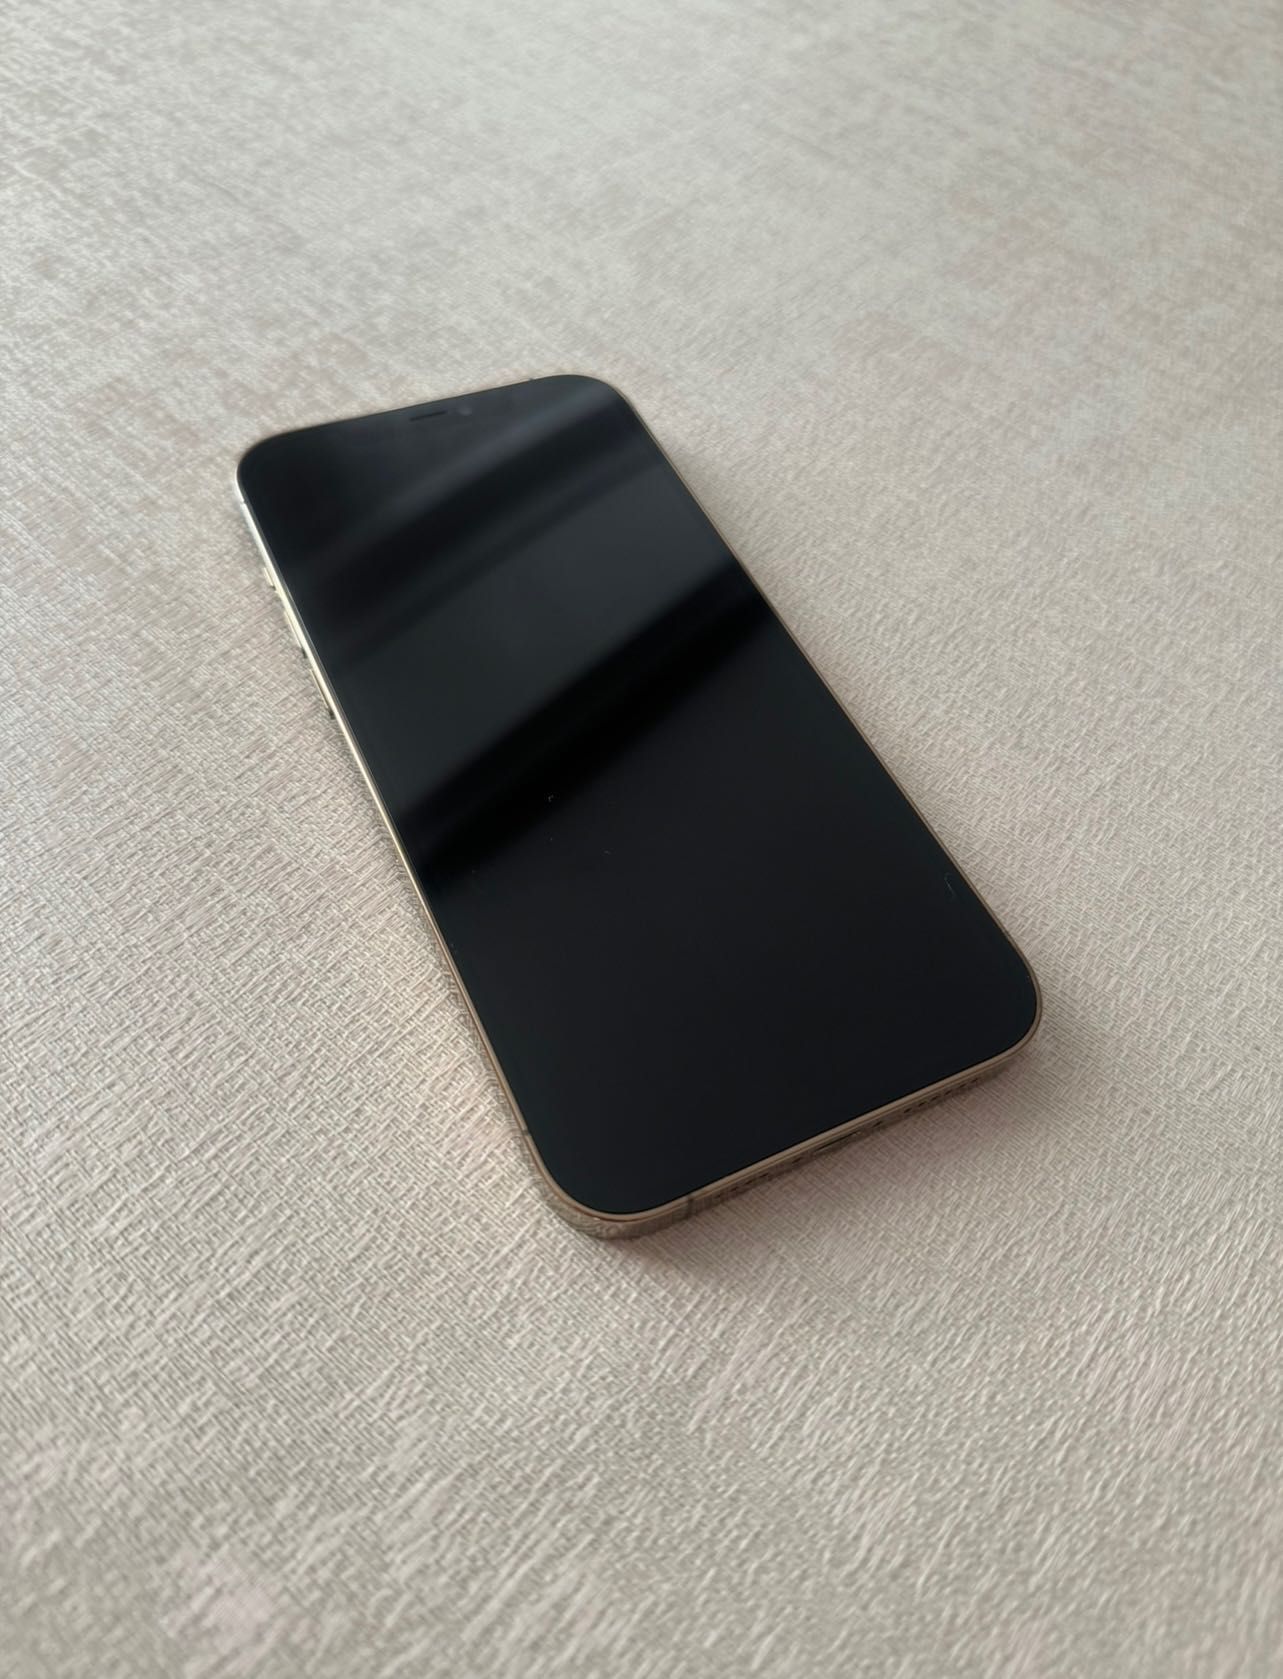 Продам iPhone 12 Pro Max 256 GB золотой